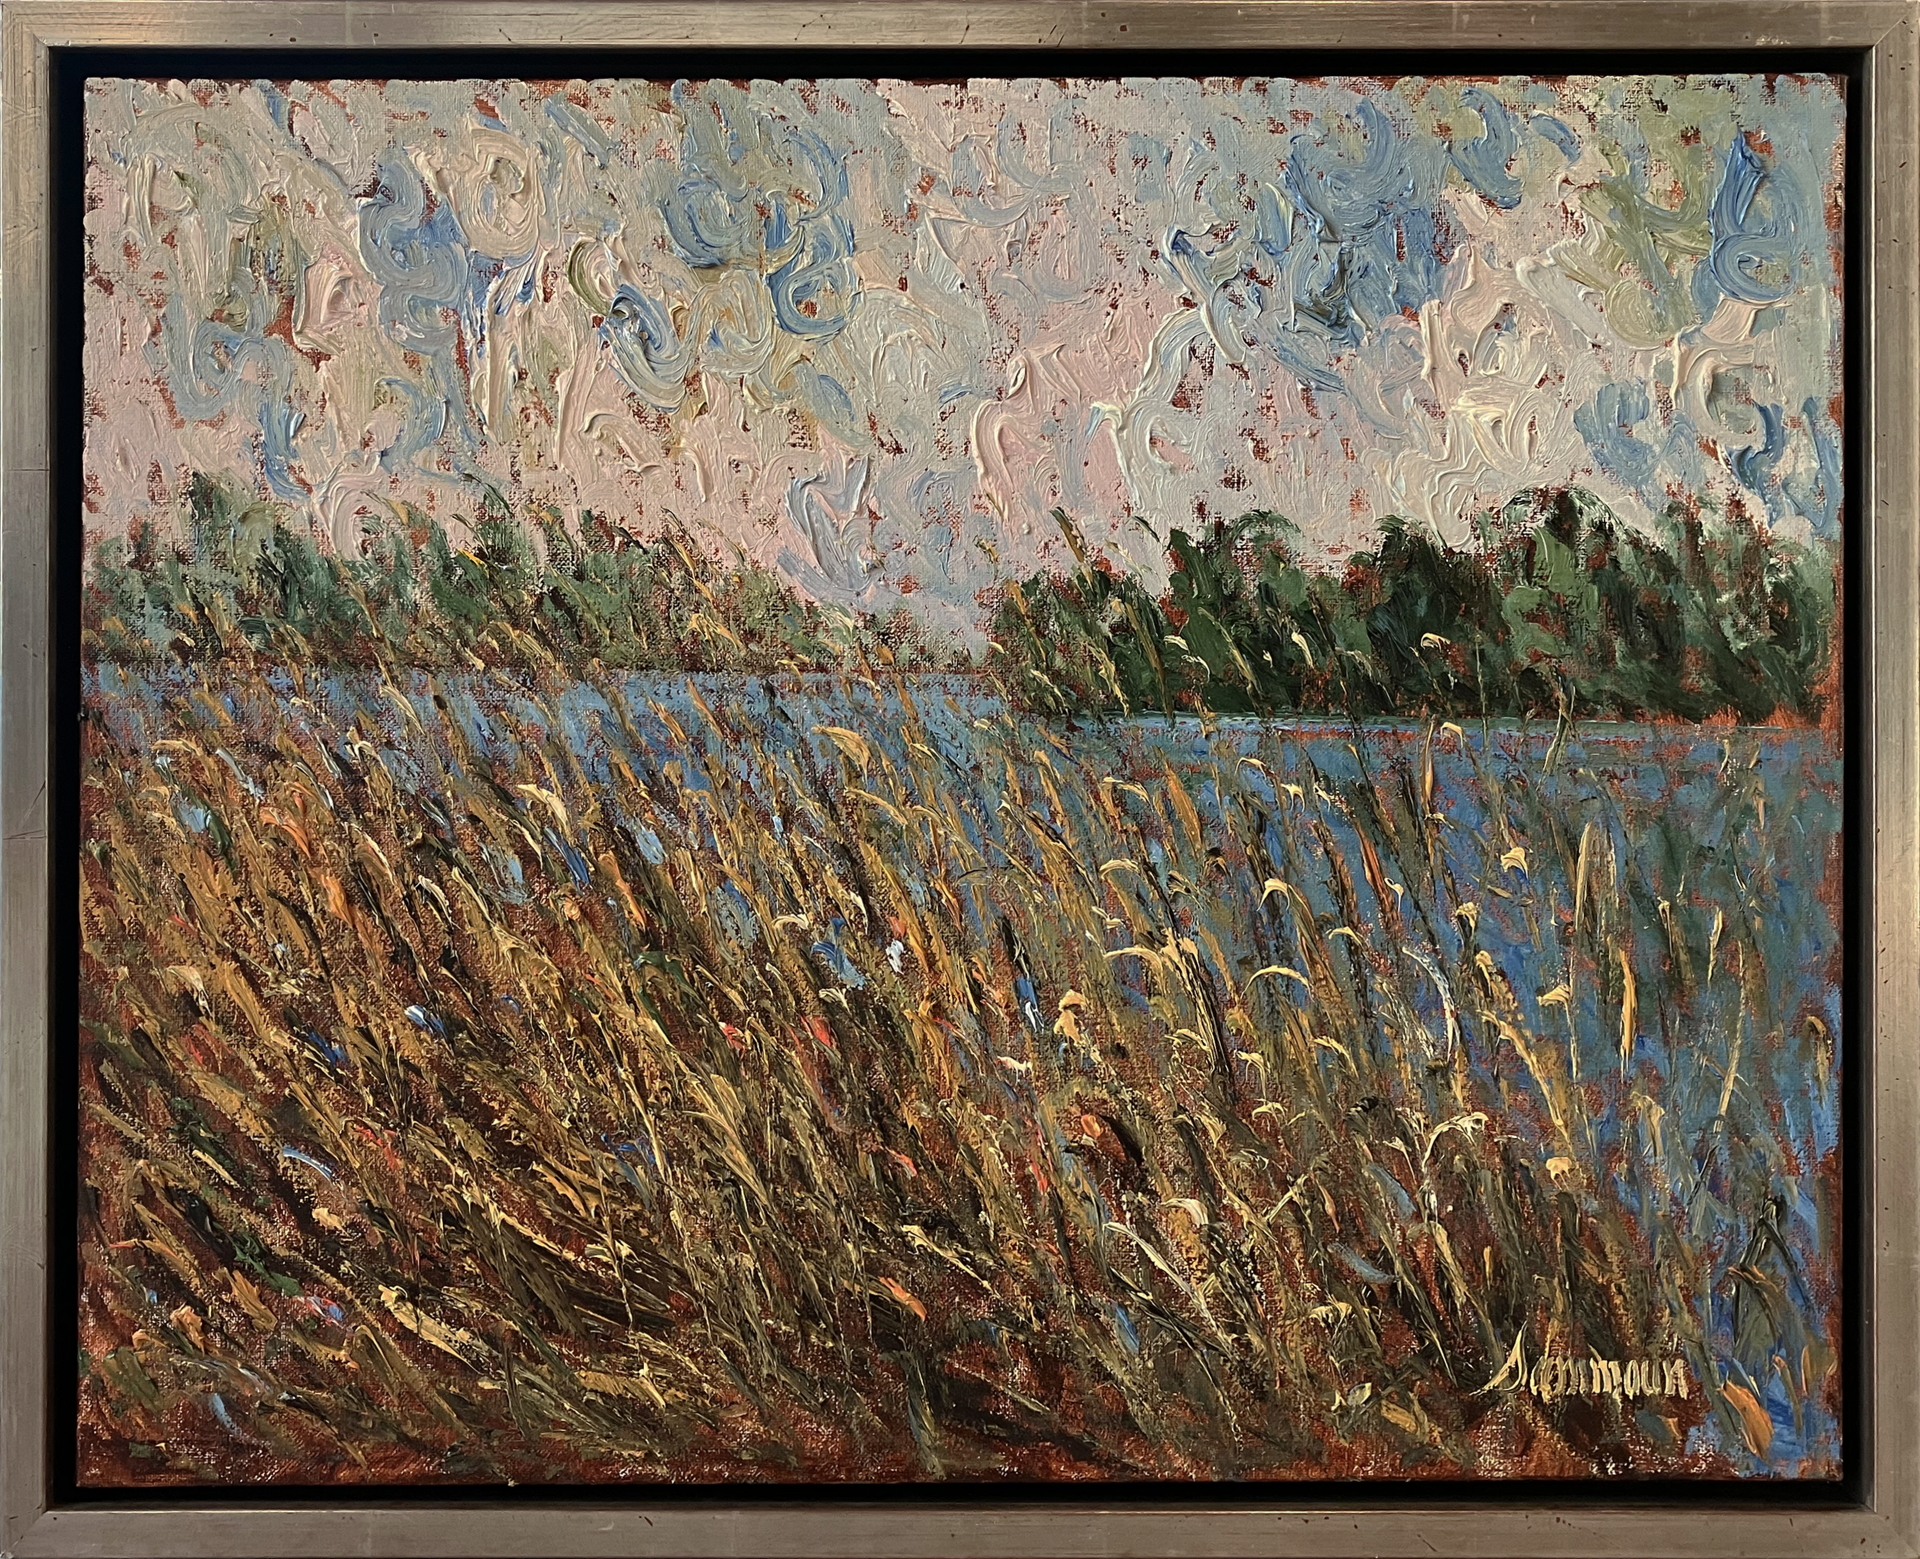 Roseaux, Rivière St-Jacques, La Prairie by Samir Sammoun